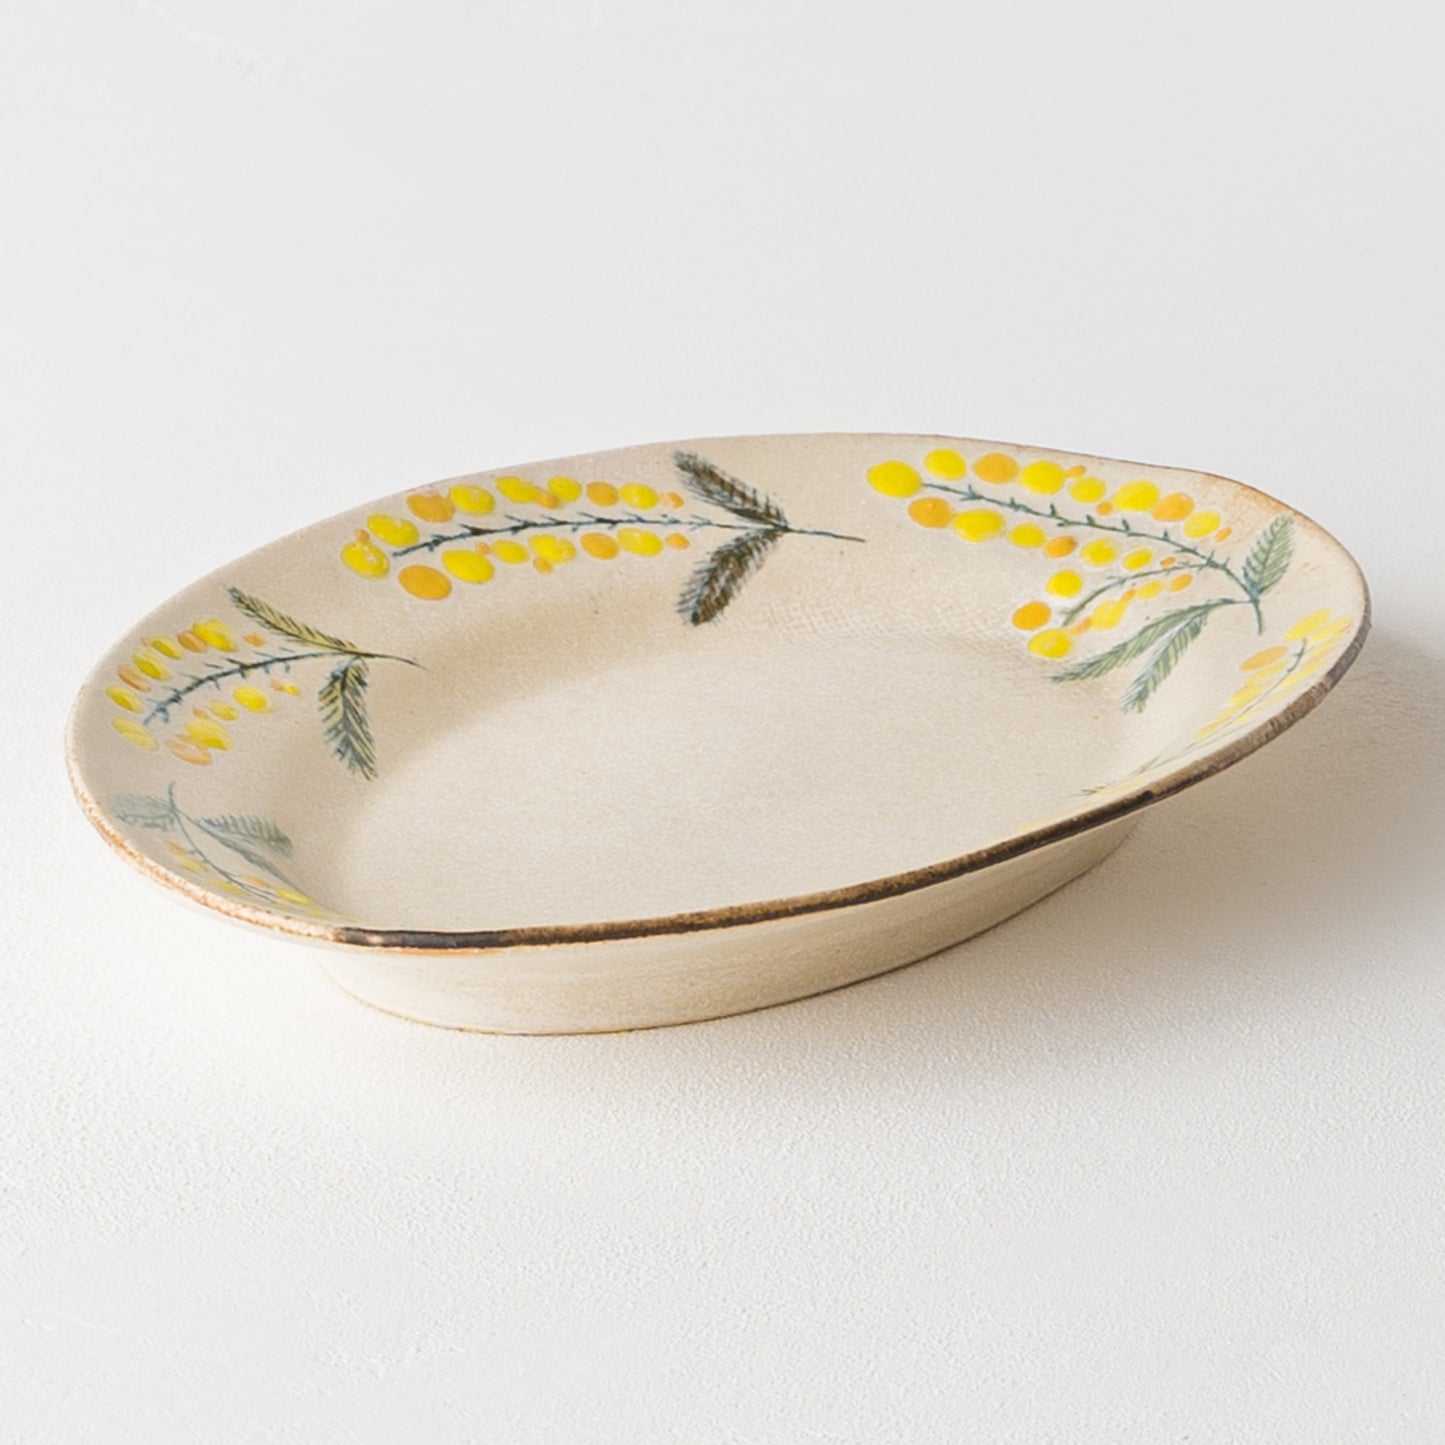 食卓に春を運んでくれる森野奈津子さんのミモザの楕円リム皿